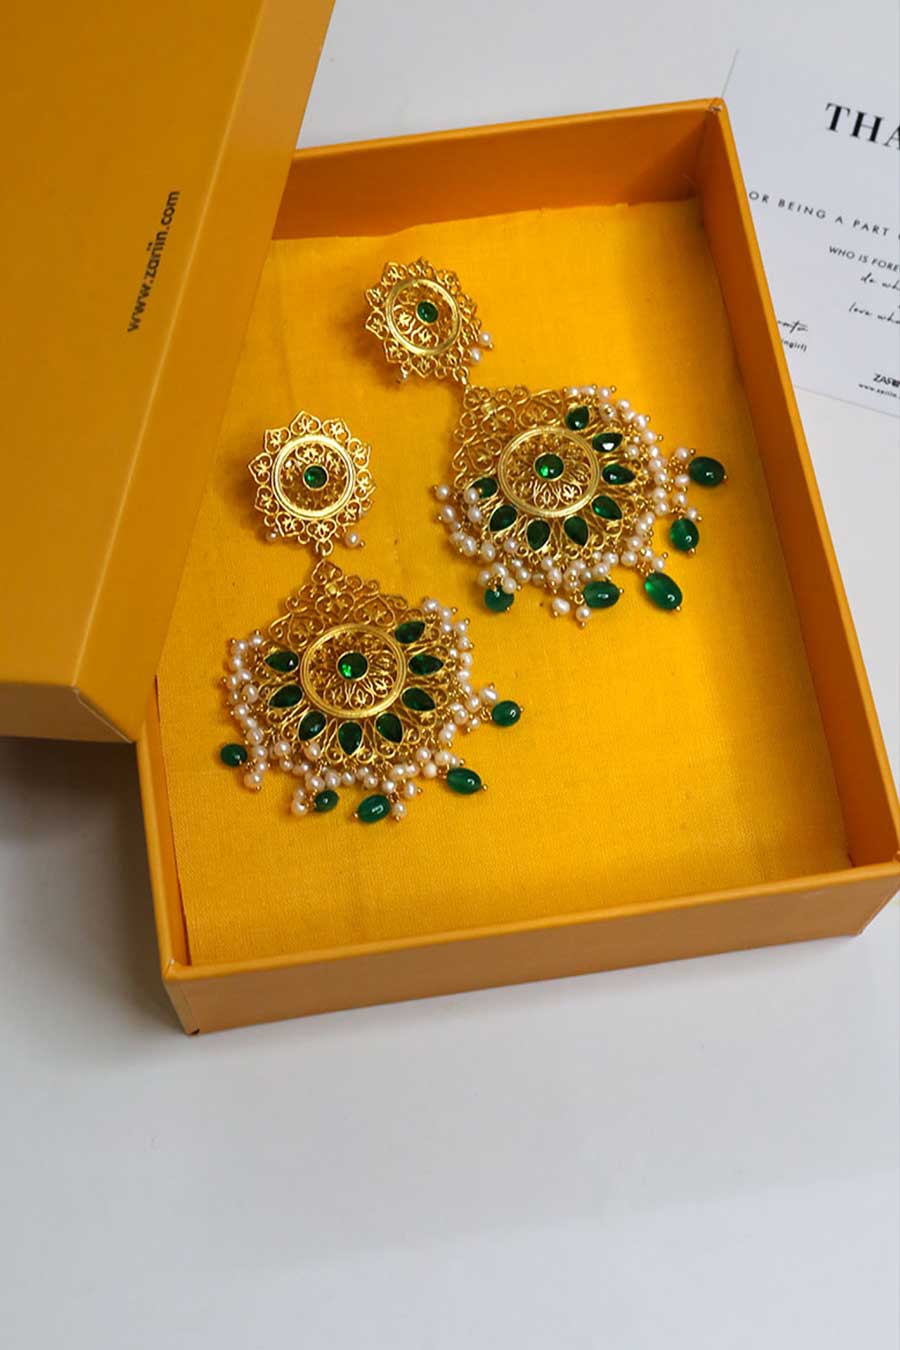 Gul-E-Bahar Gold Plated Dangler Earrings